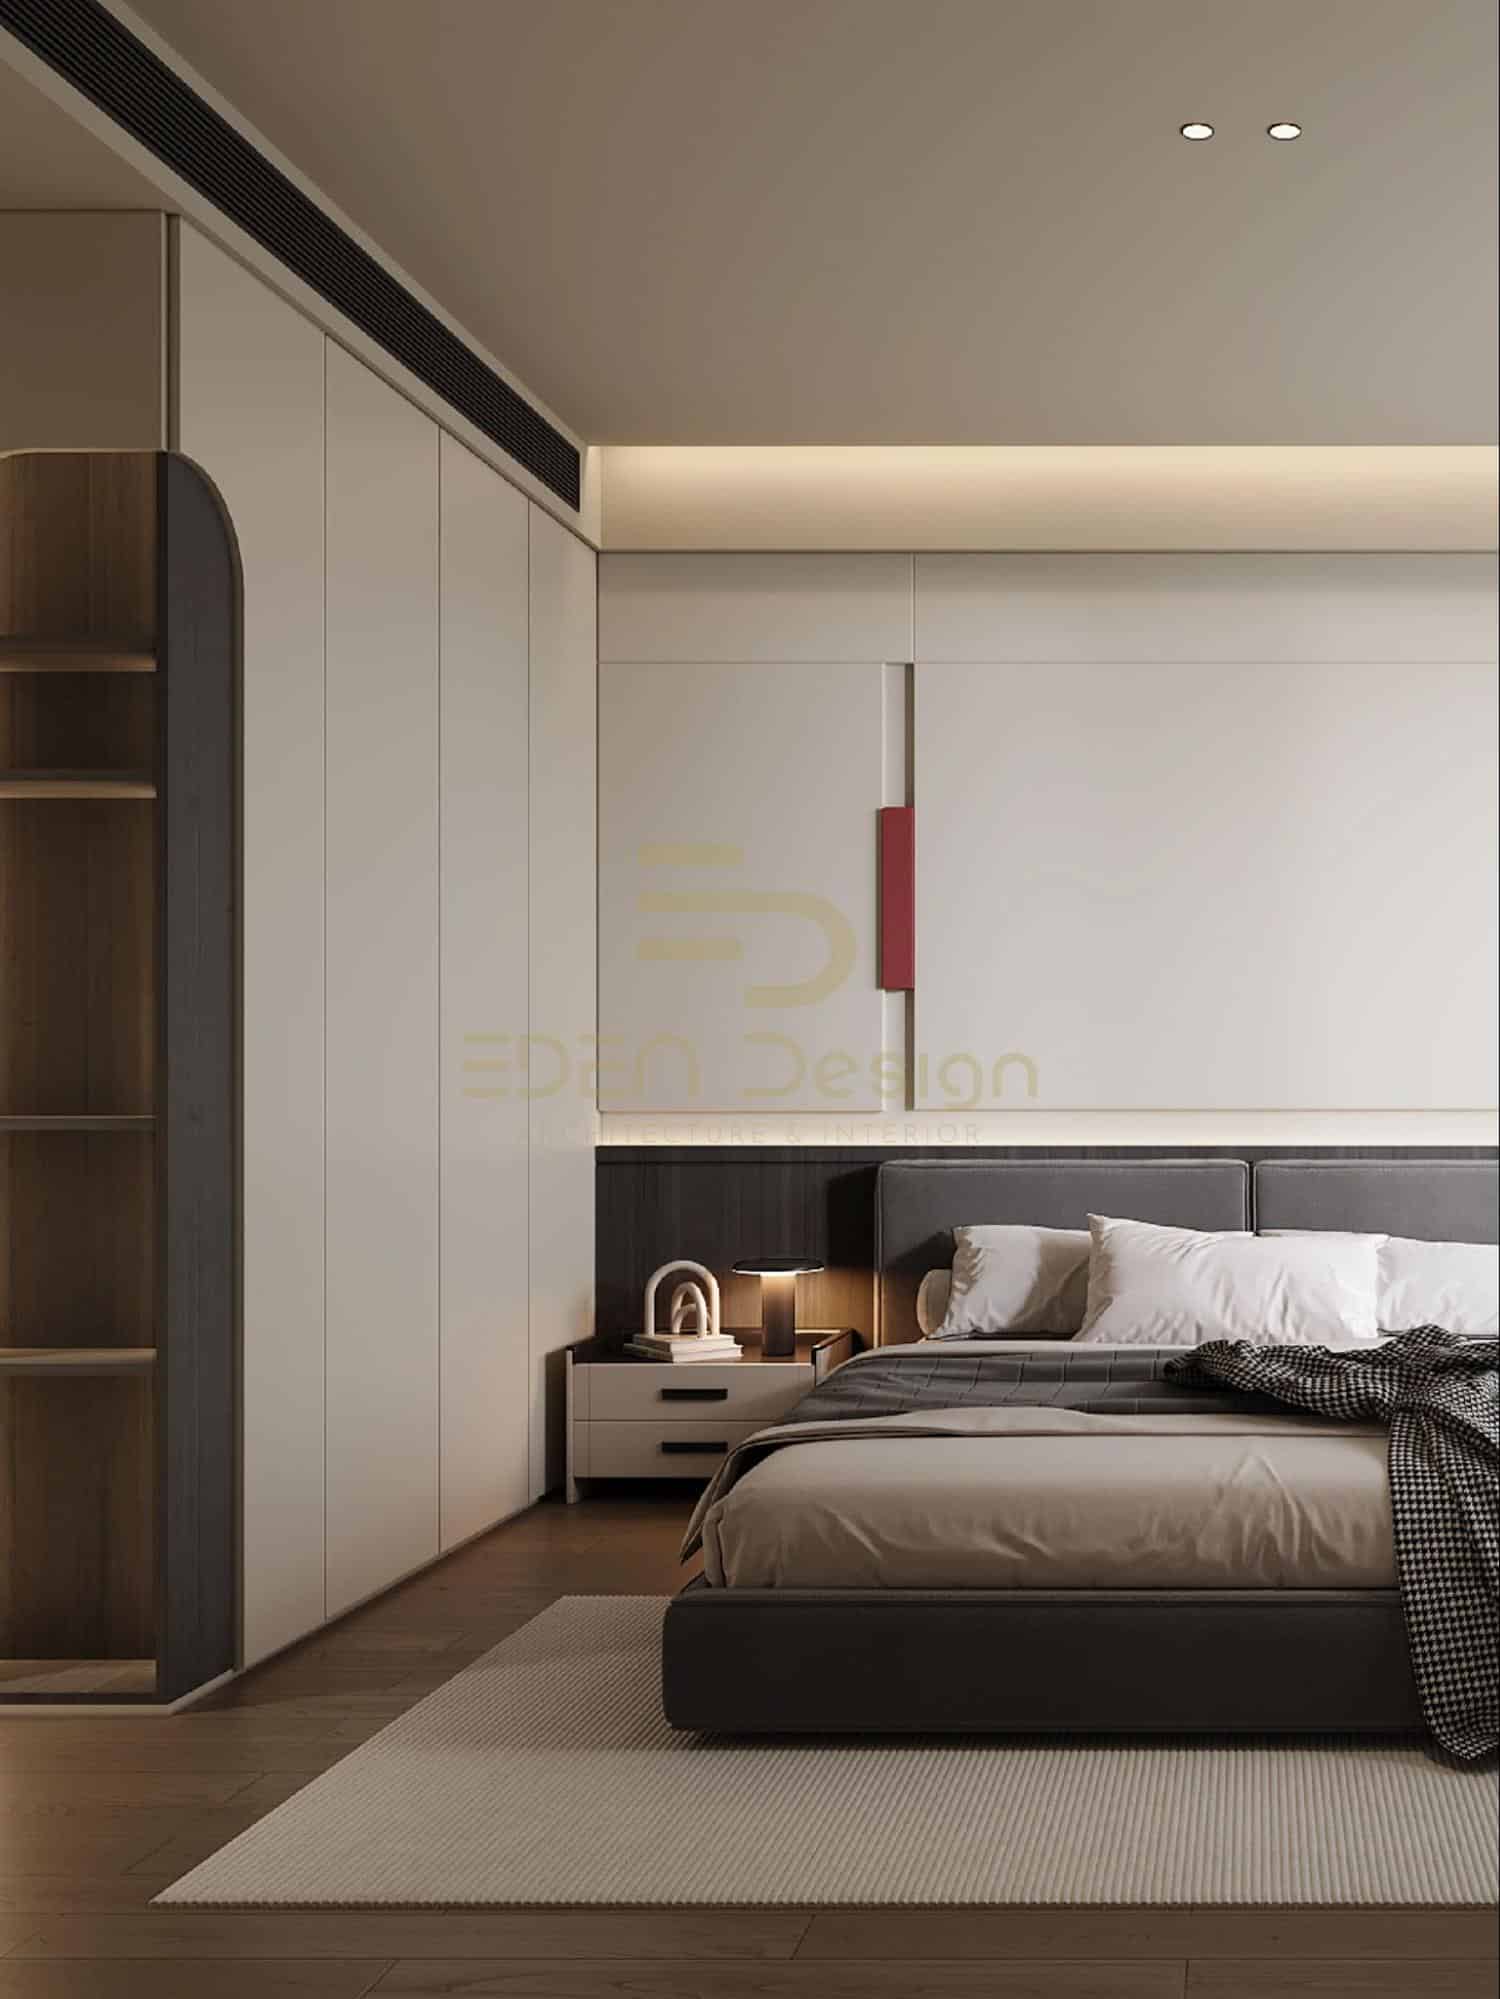 Phòng ngủ thiết kế đơn giản nhưng lại đối đa hóa công năng nội thất